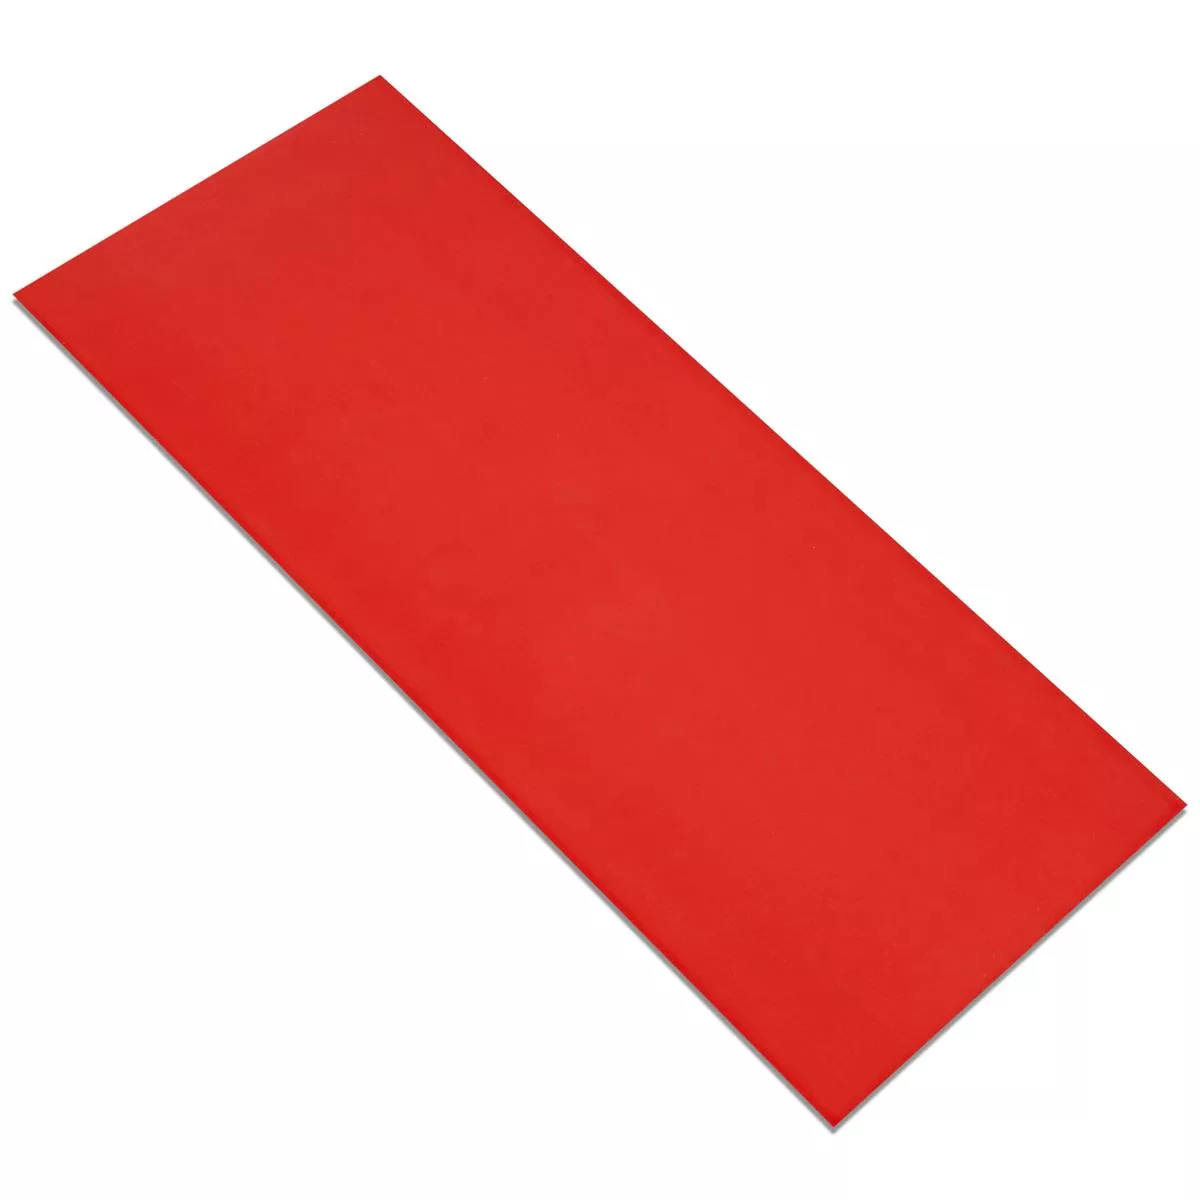 Revestimiento Contento Rojo 25x50cm